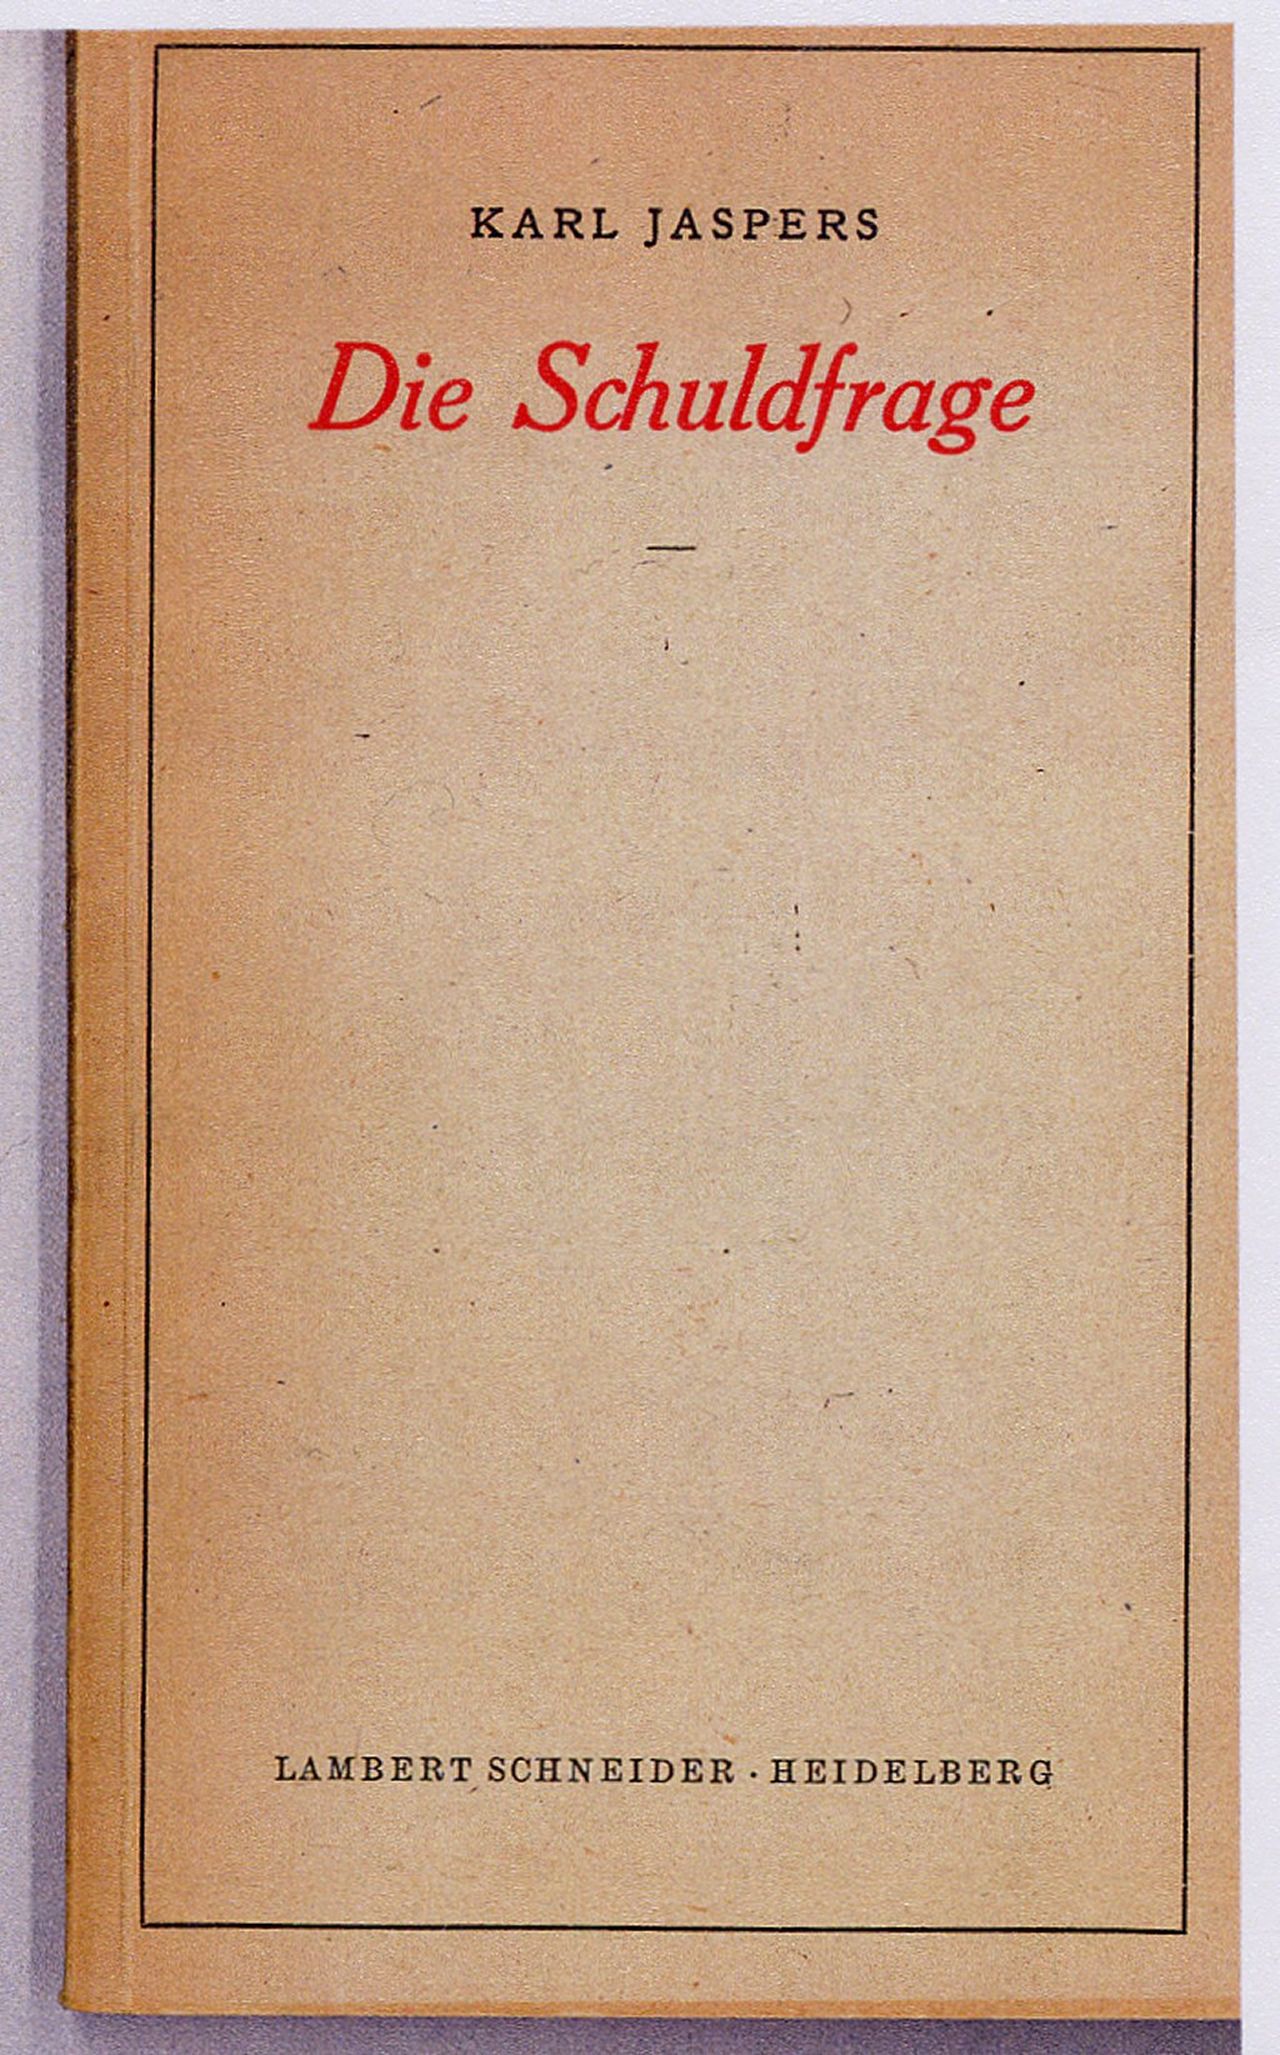 Buchcover zum philosophischen Werk über Schuld und Verantwortung für NS-Verbrechen von Karl Jaspers.
